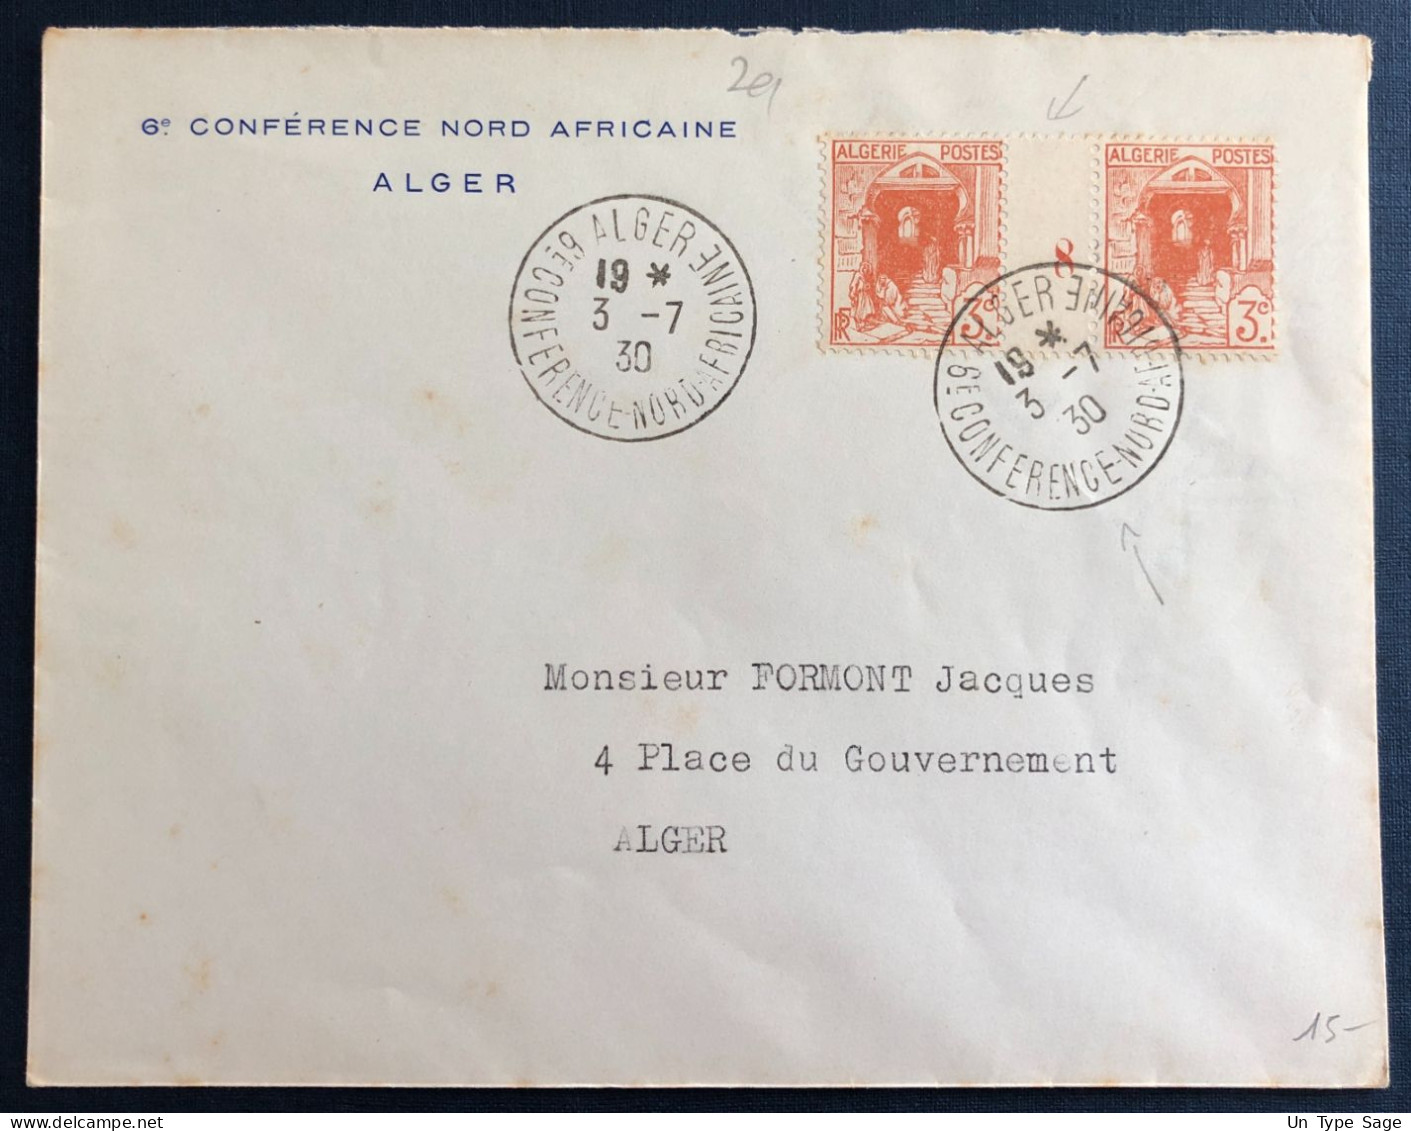 Algérie, Divers (millésime) Sur Enveloppe TAD Alger, 6e Conférence Nord Africaine 3.7.1930 - (B3359) - Briefe U. Dokumente